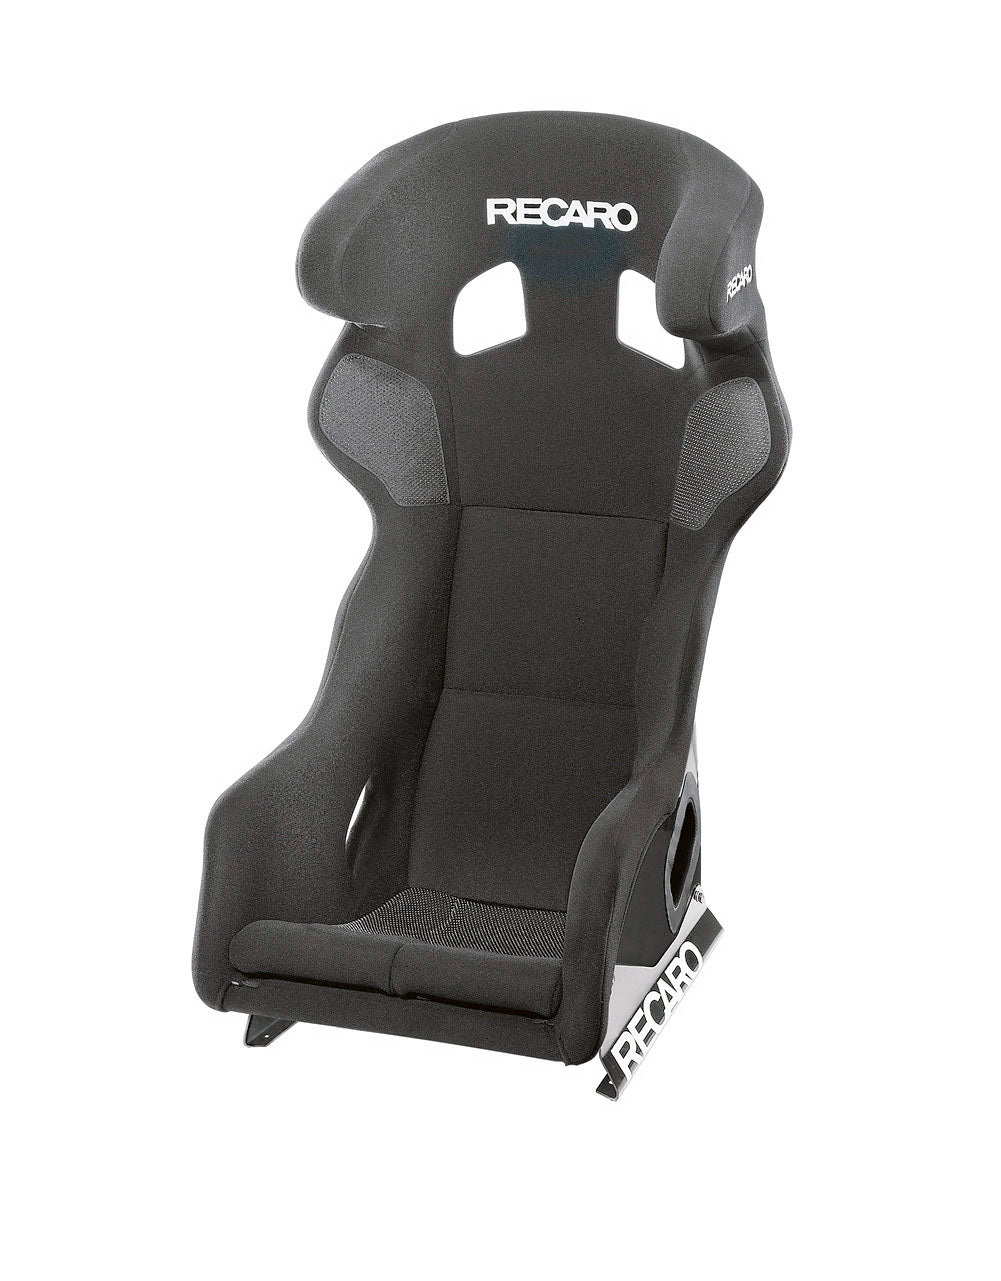 Recaro Pro Racer SPG Racing Seat